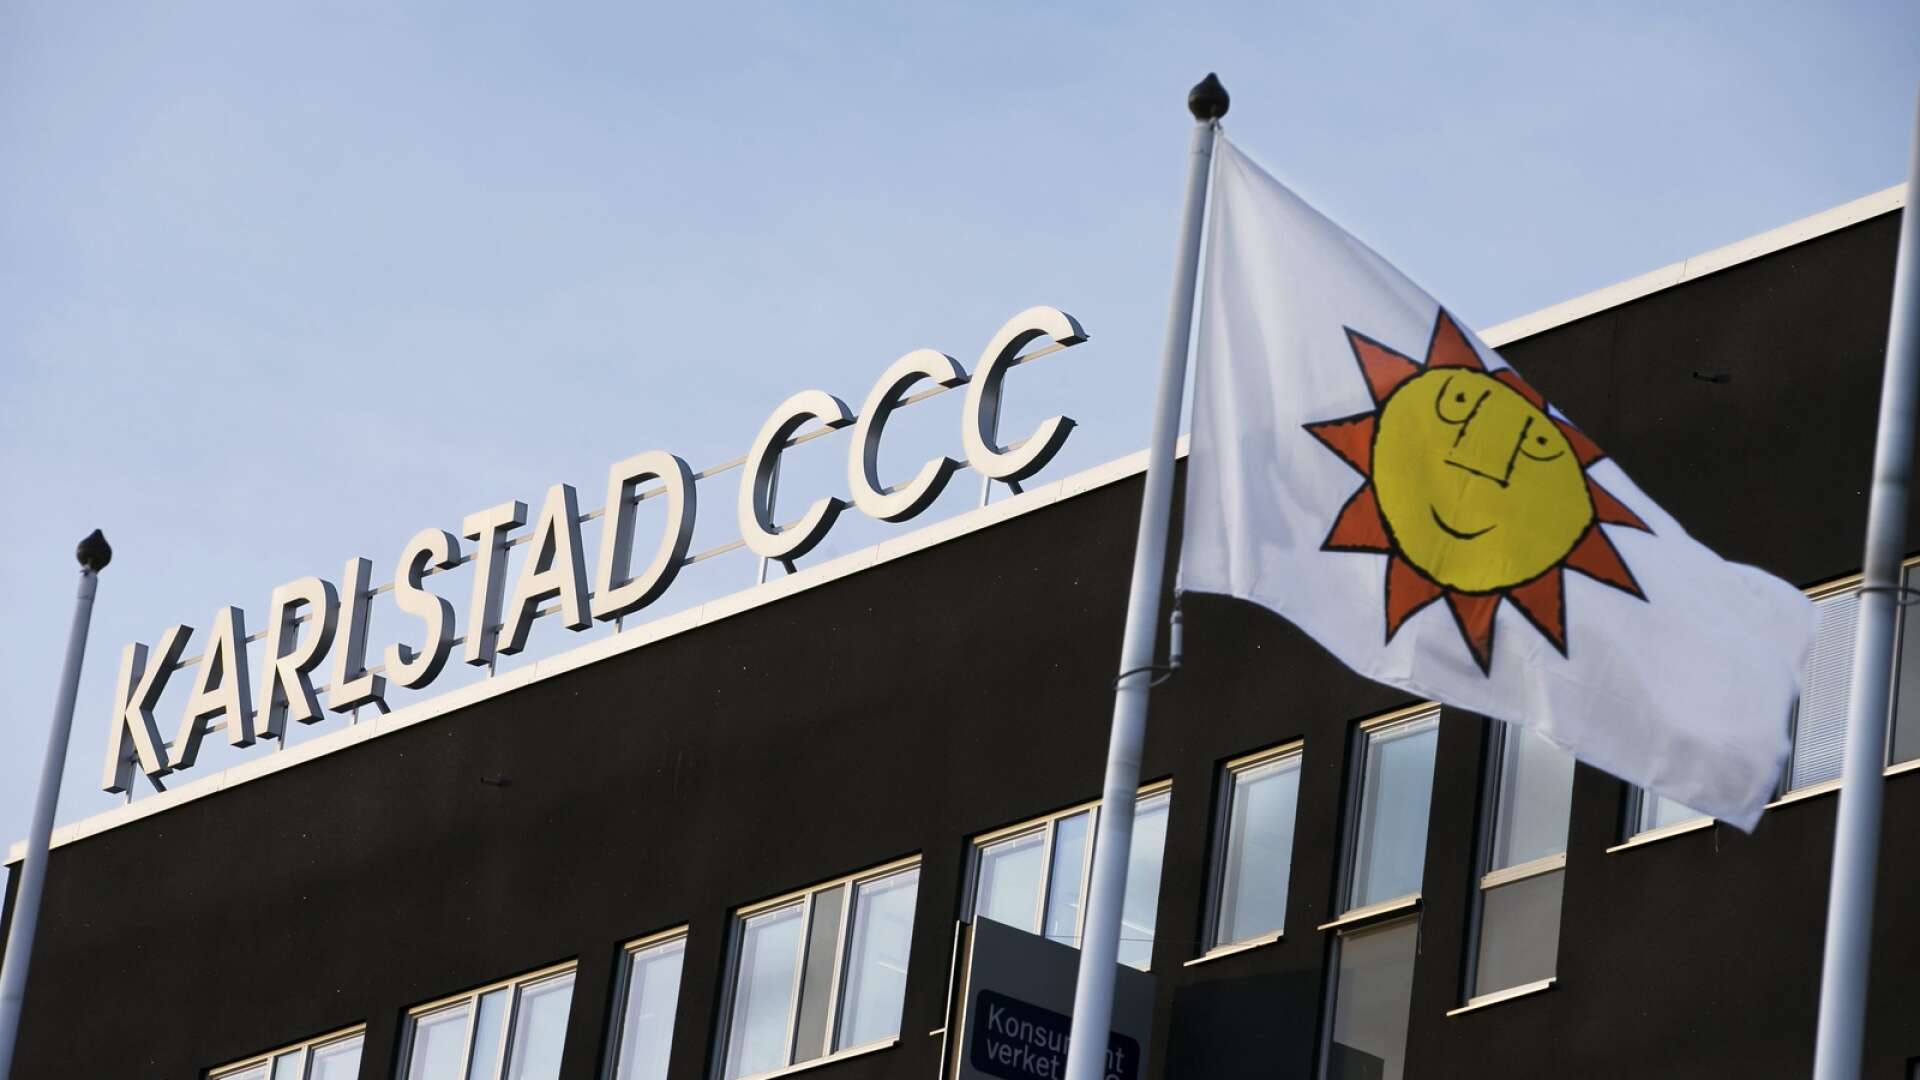 En anställd på Karlstad CCC blivit smittad av Covid-19. 